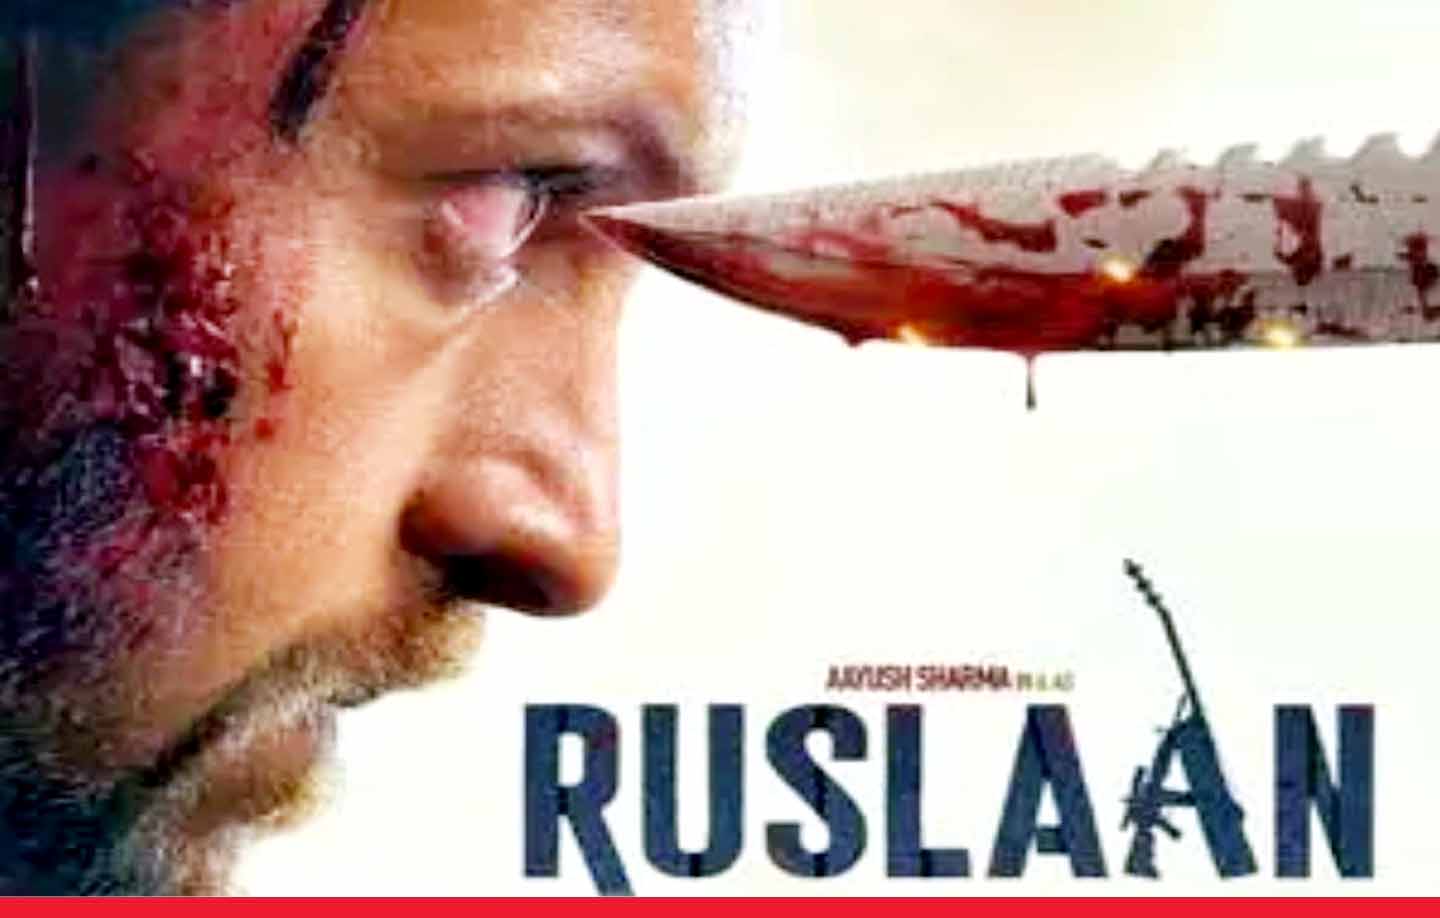 आयुष शर्मा ने जारी किया फिल्म ‘रुसलान’ का नया पोस्टर